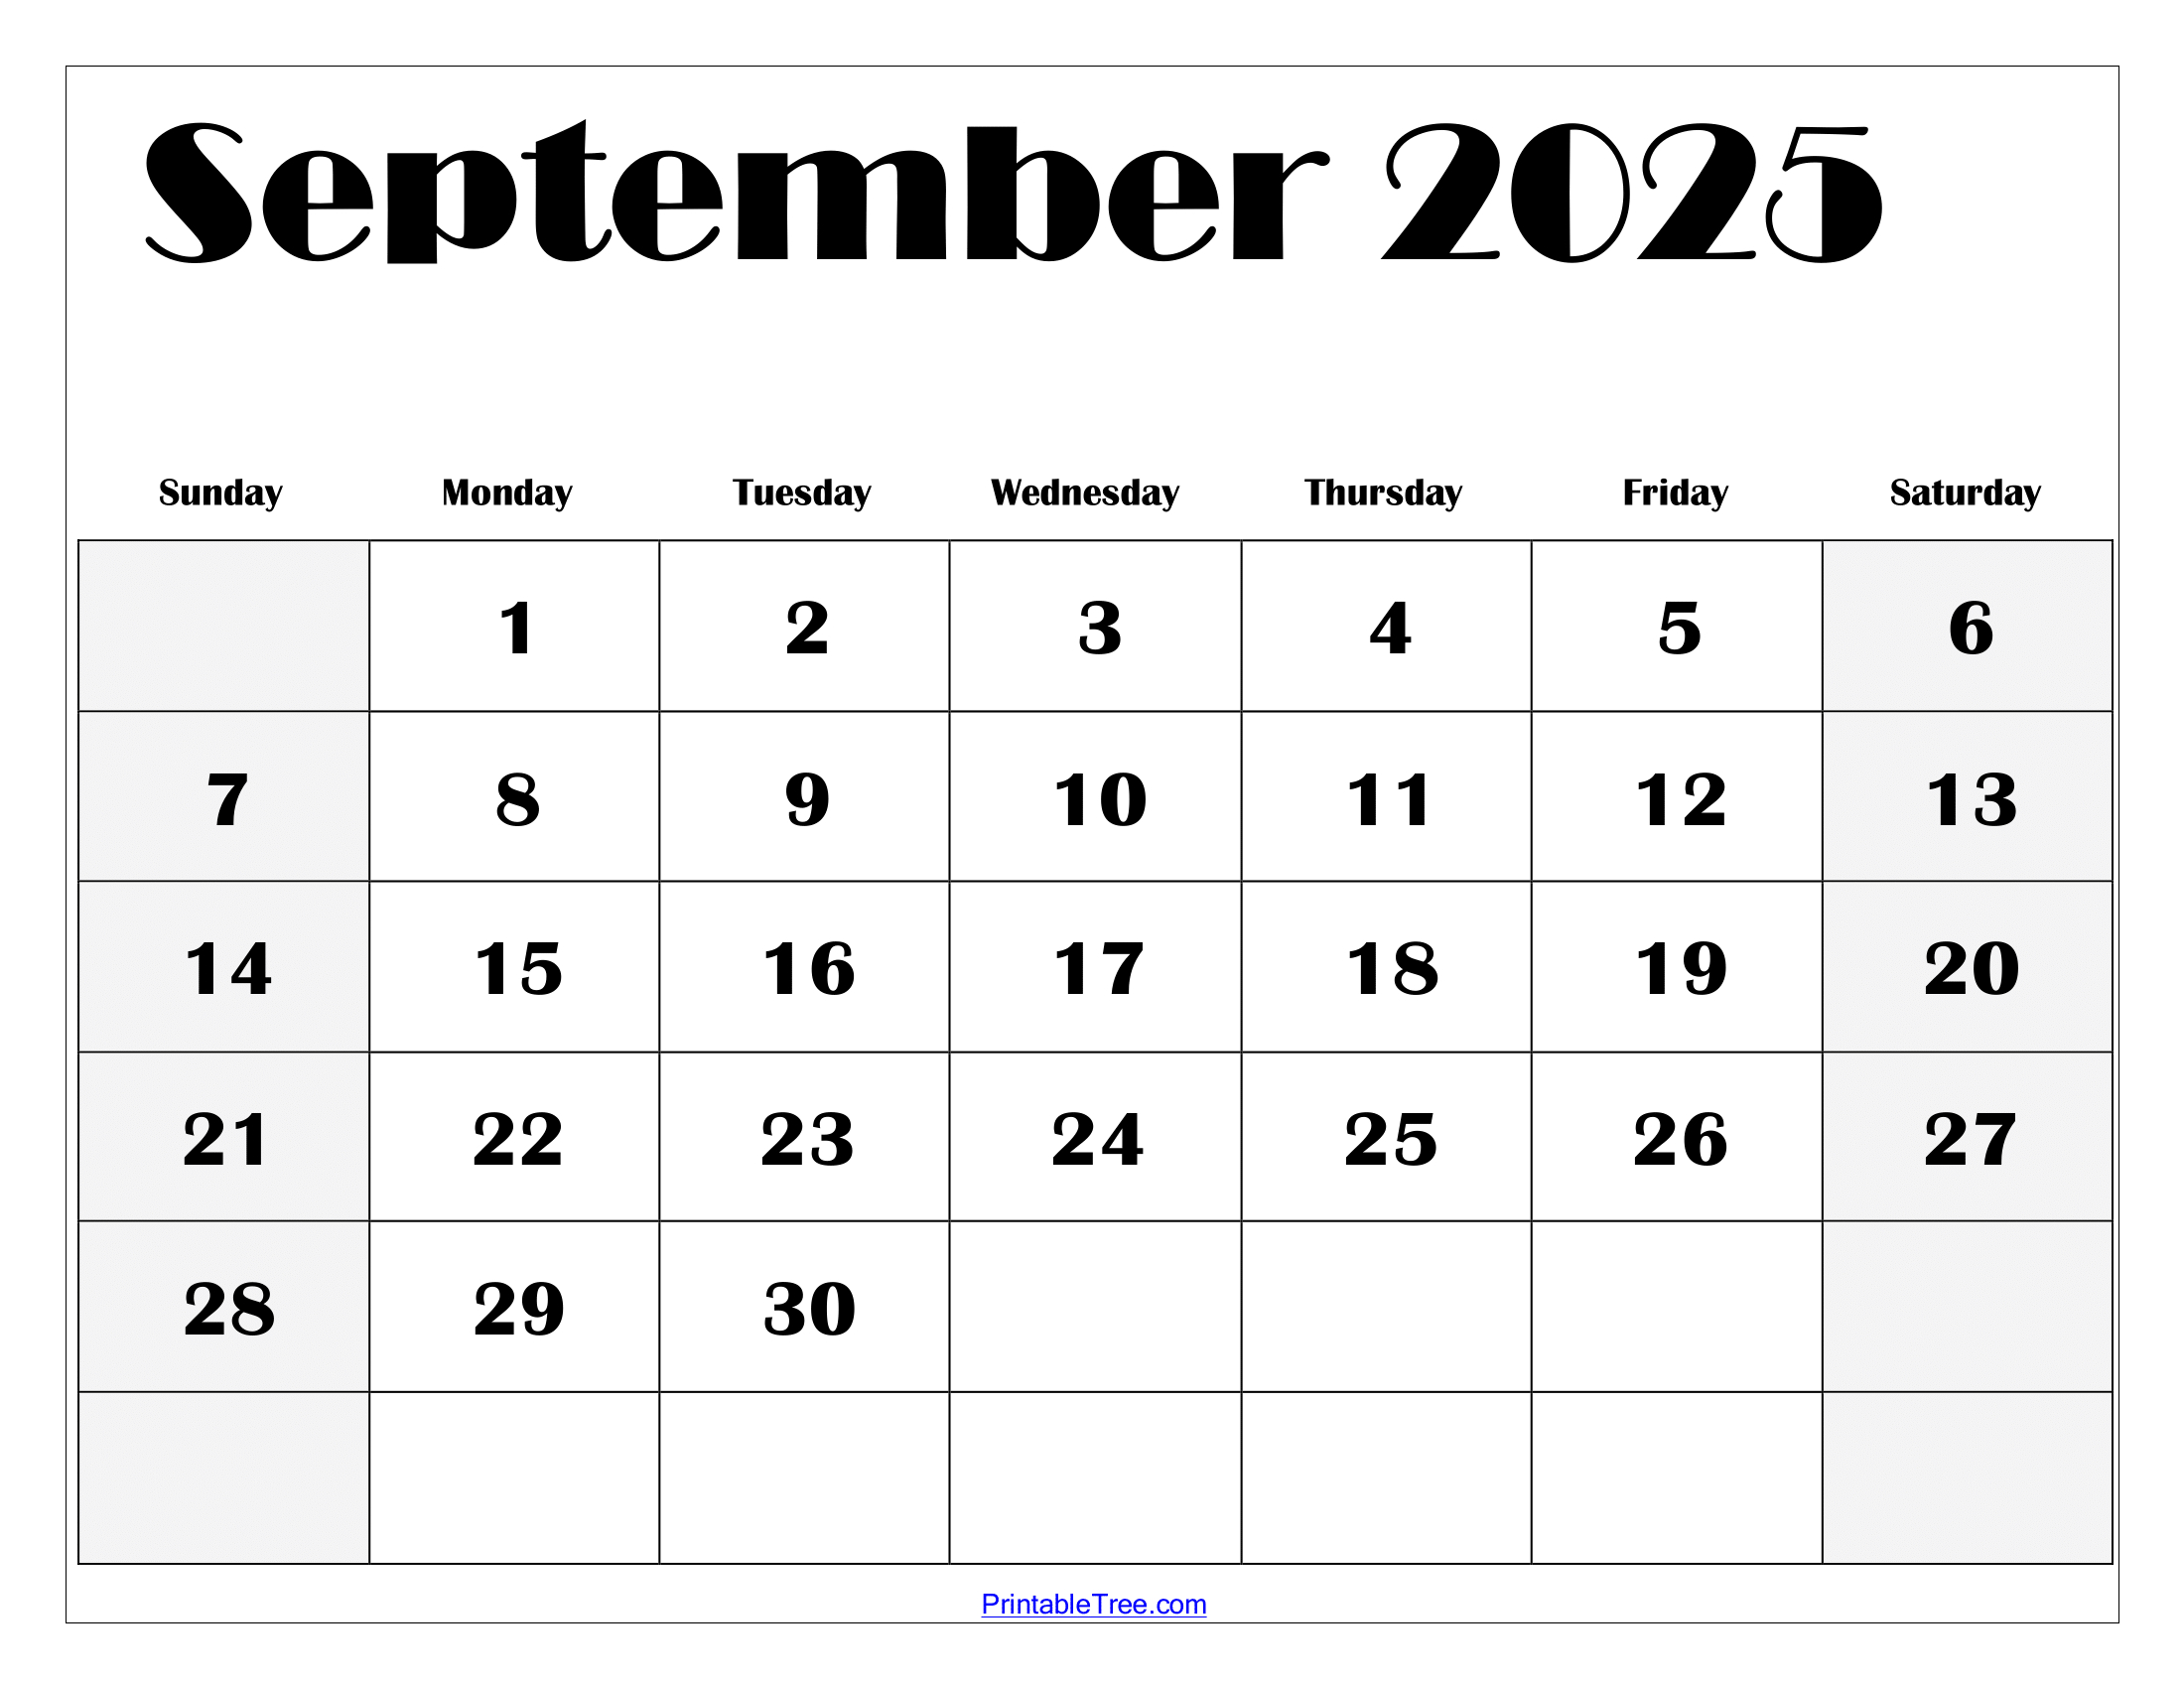 Sept 2024 Calendar Printable Calendar 2024 Printable Calendar 2024